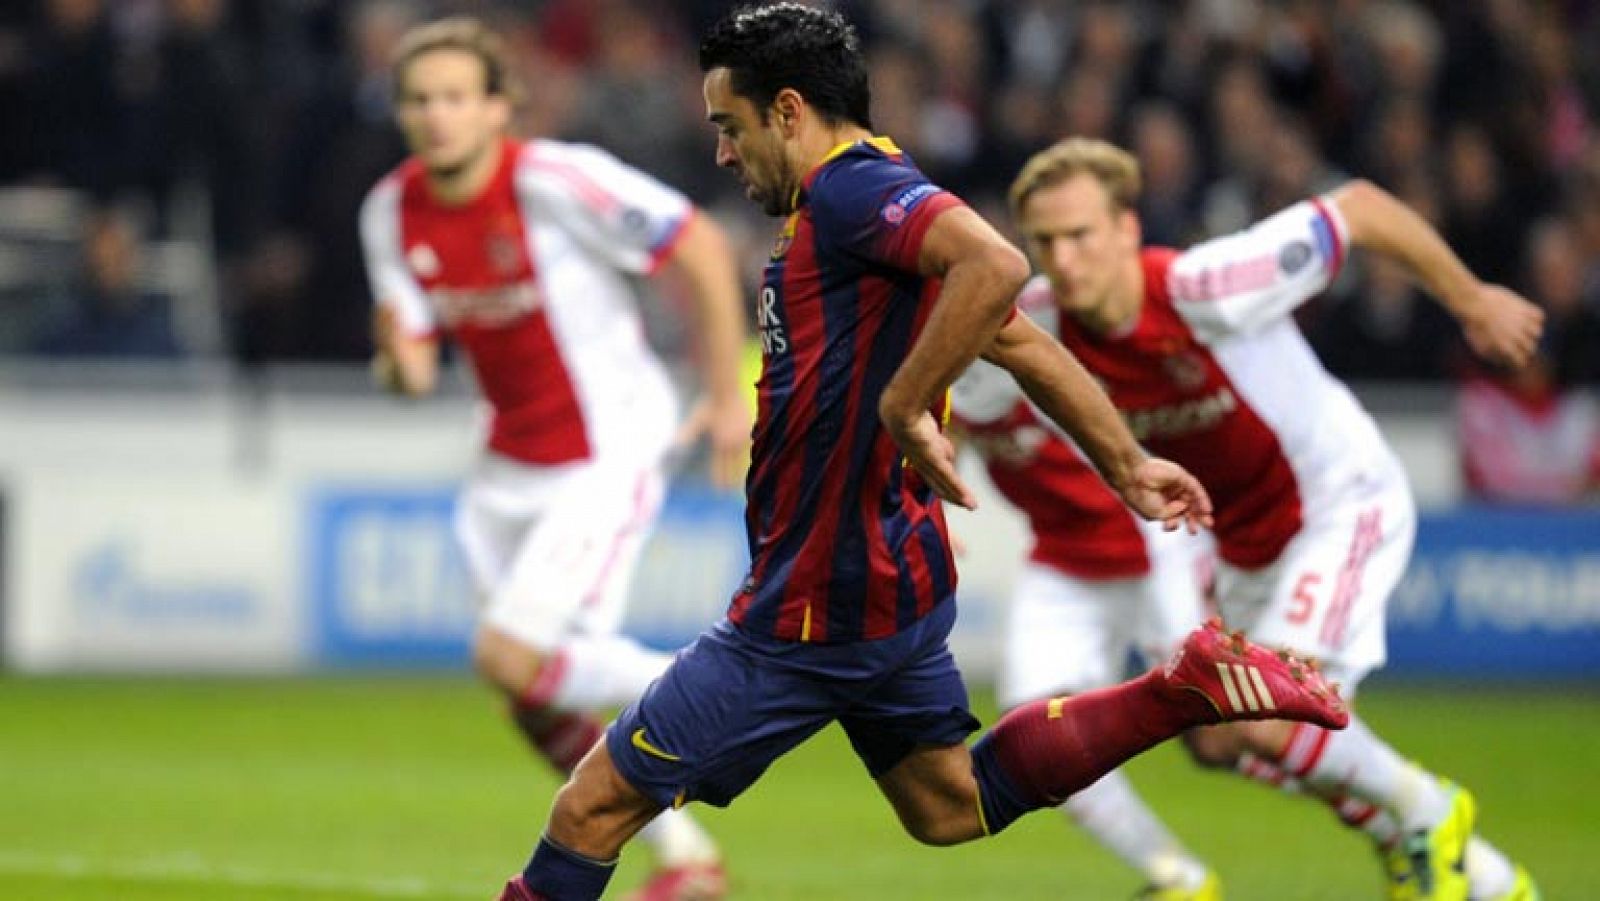 El centrocampista del Barça Xavi Hernández ha recortado distancias con el Ajax de panelti, que provocó Neymar en la jugada previa.